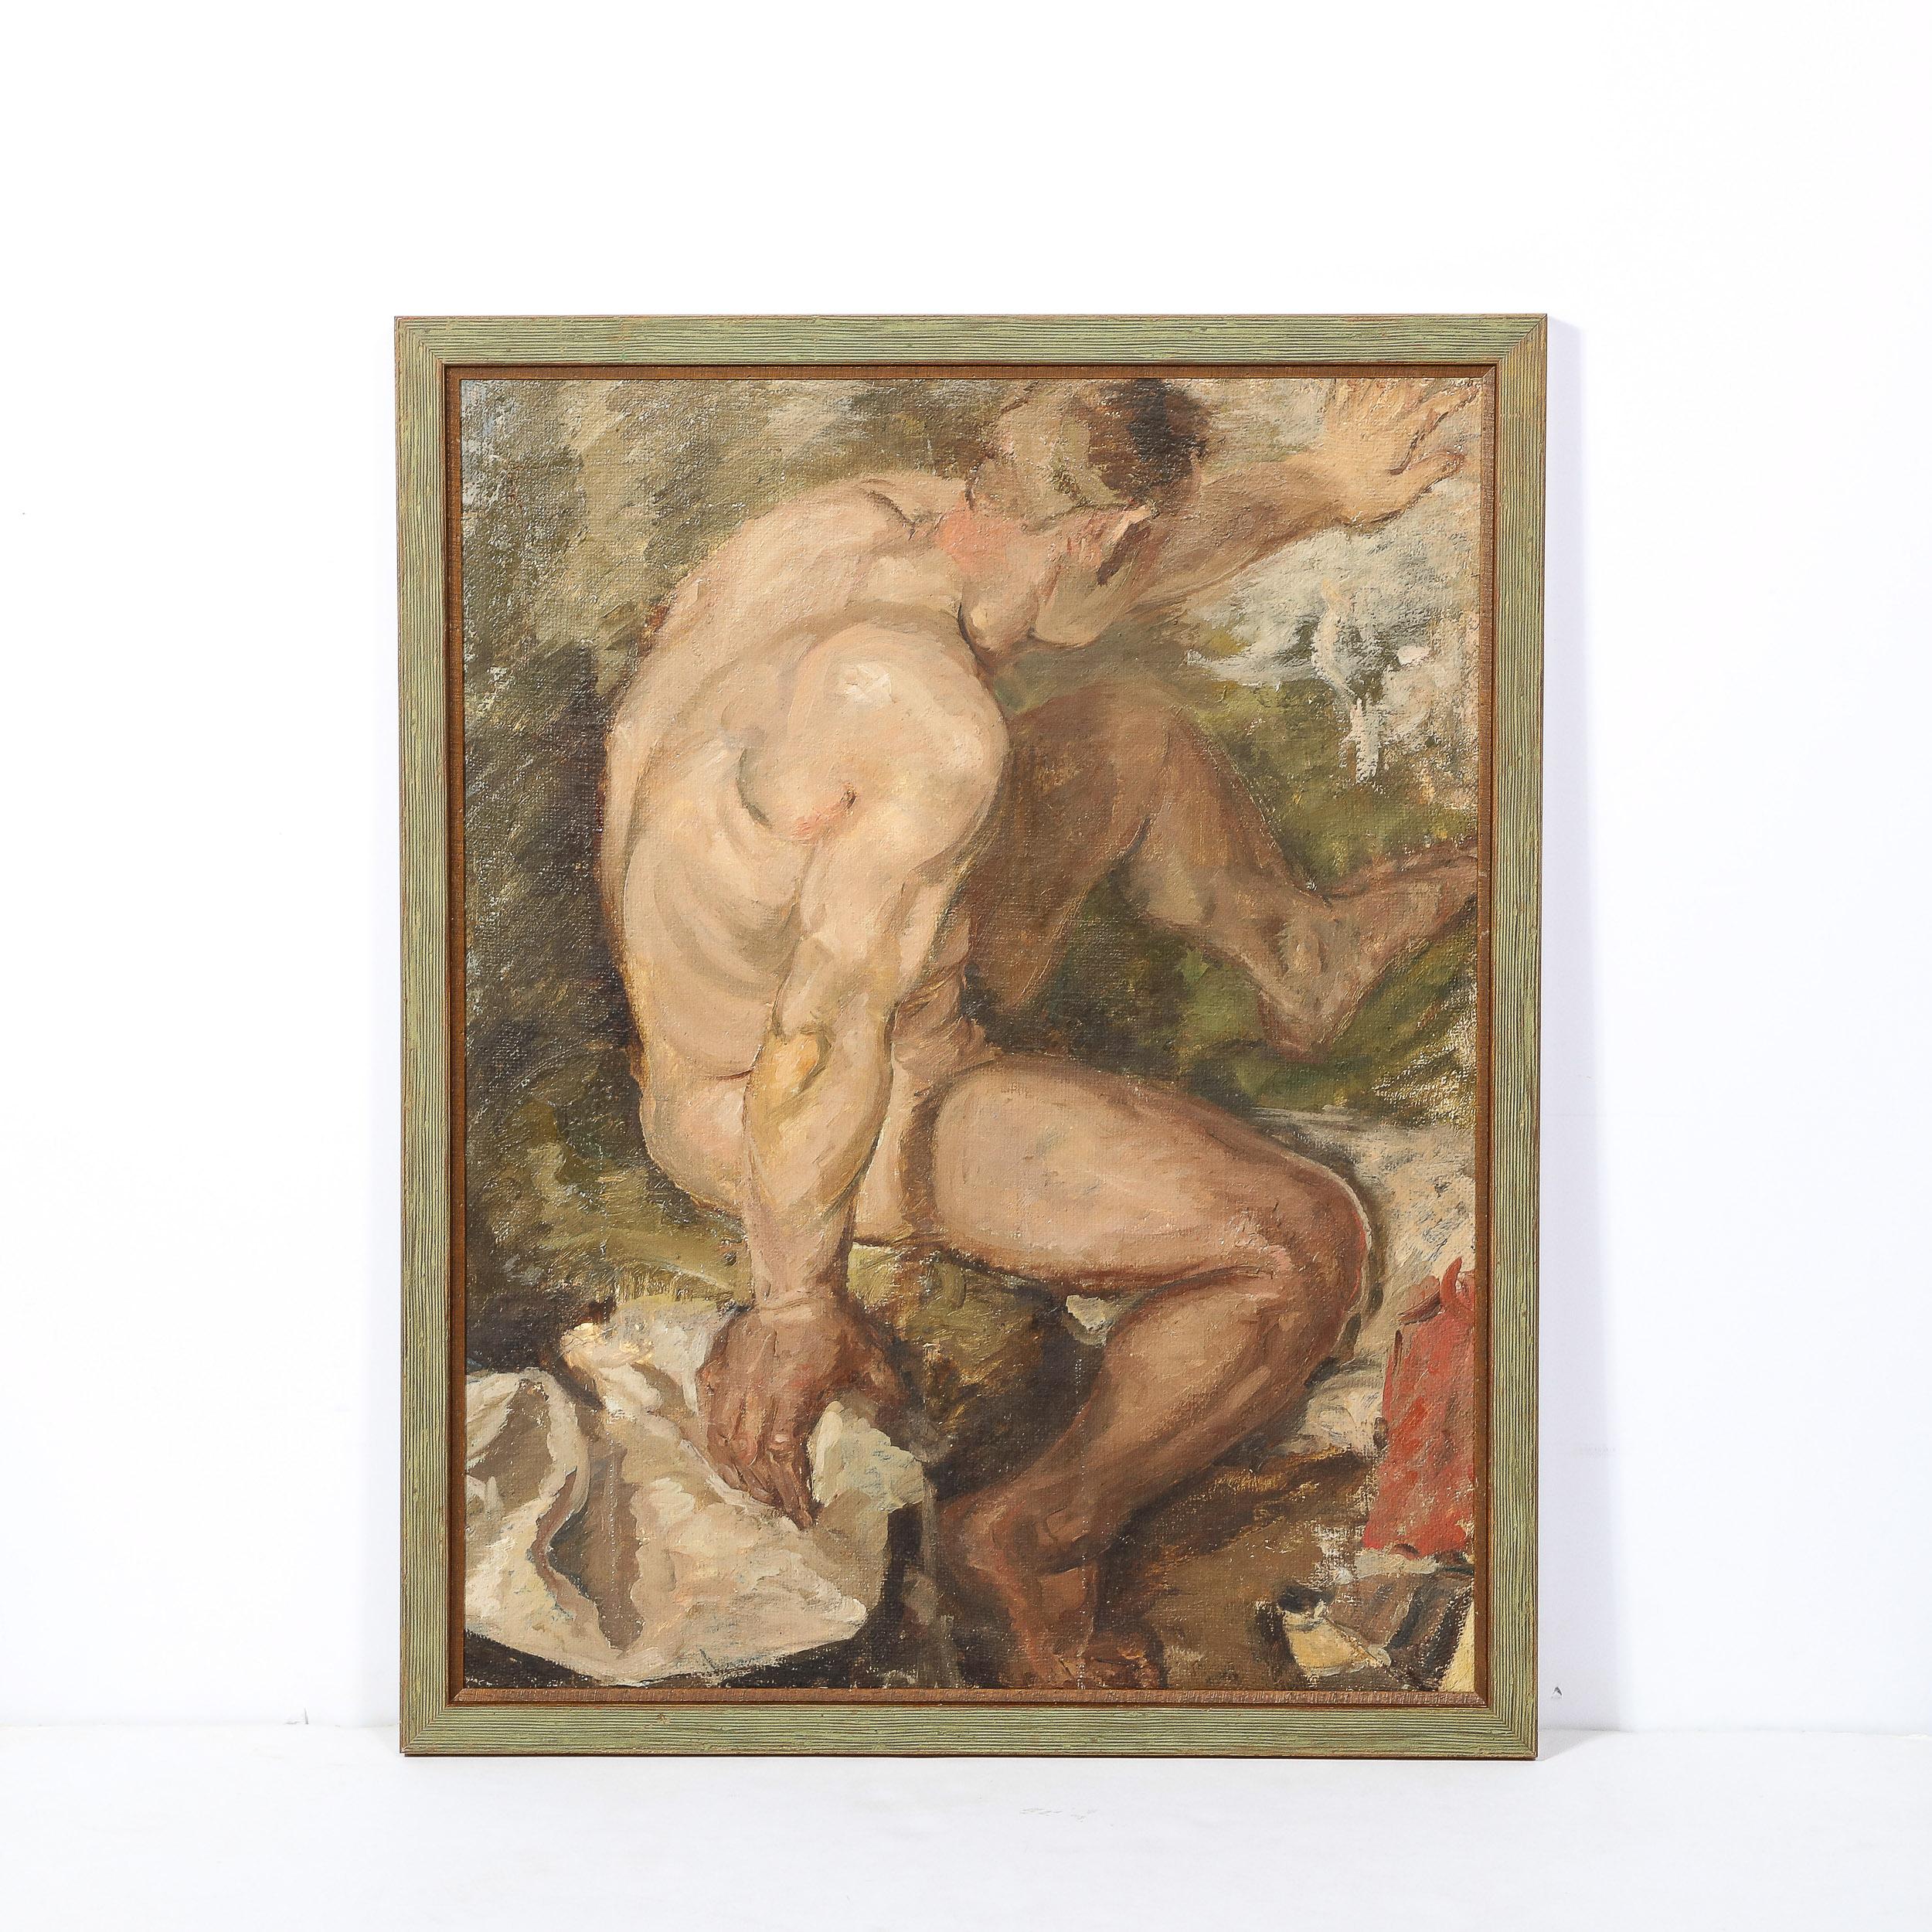 Romantisches Ölgemälde auf Sackleinen mit einer nackten männlichen Figur, die in einem Fluss badet  – Painting von Unknown